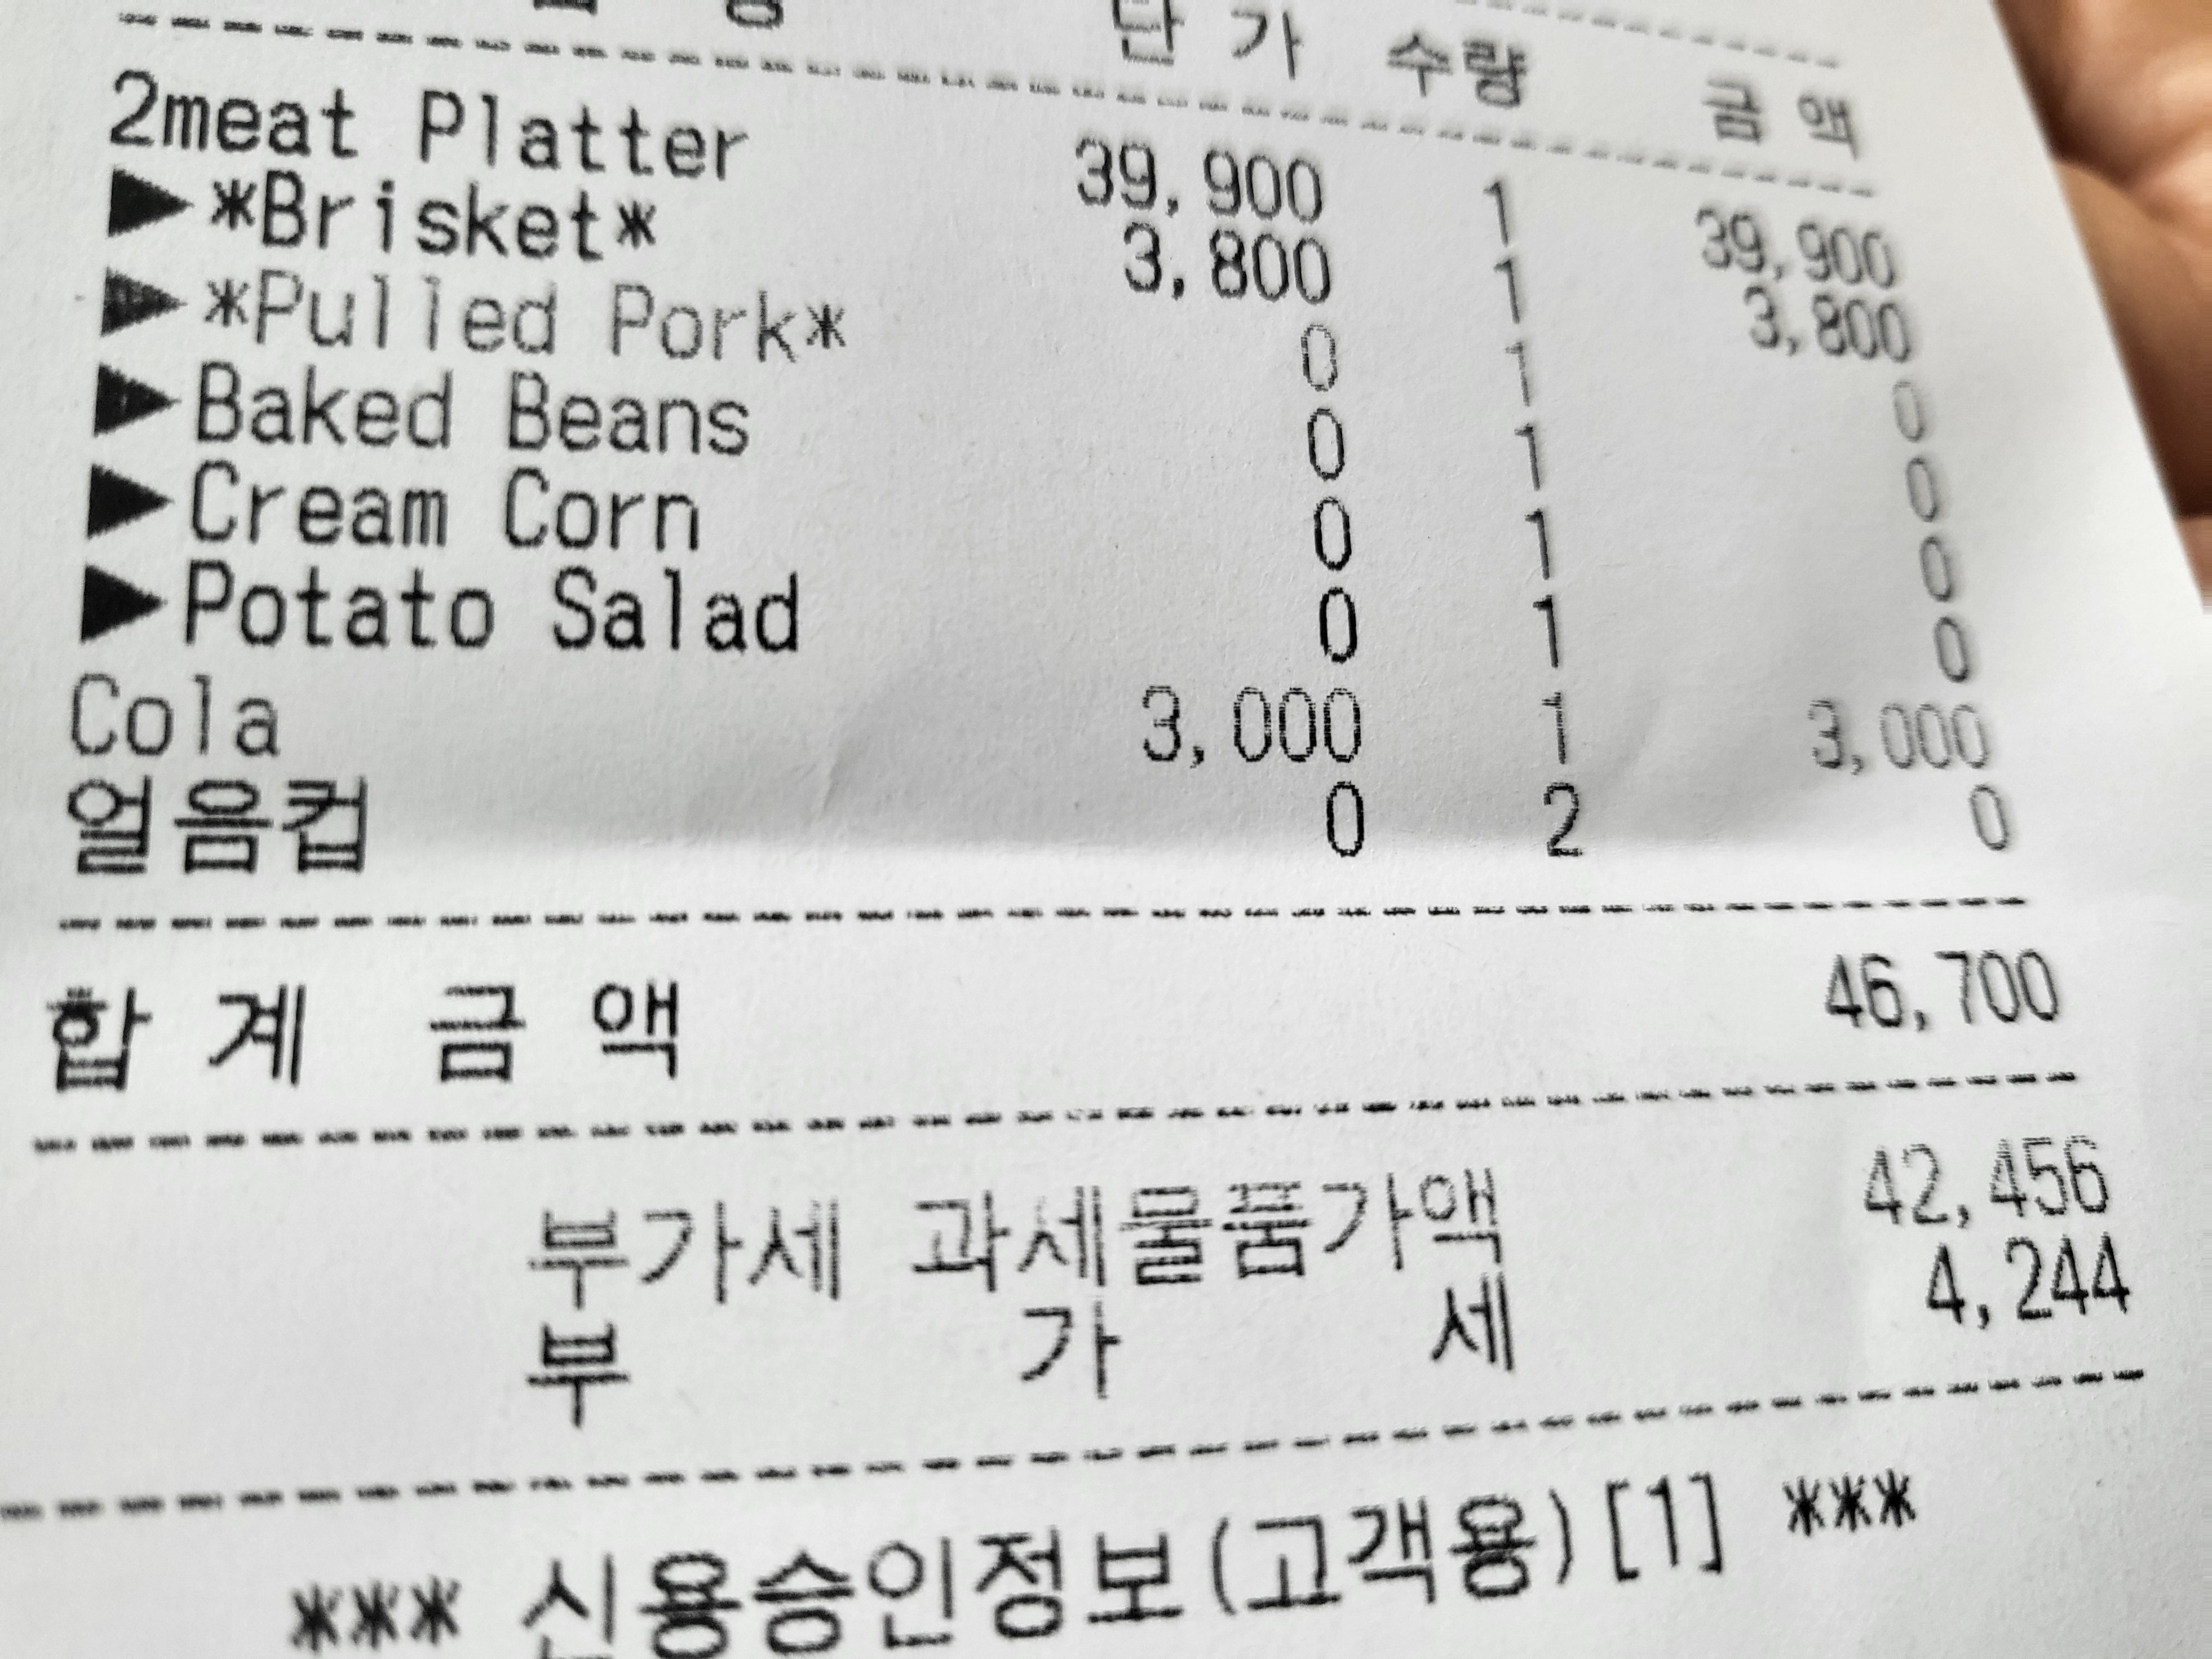 여자친구와 둘이 방문해서 먹은 영수증
총 46,700원으로 가격이 저렴하지는 않다...